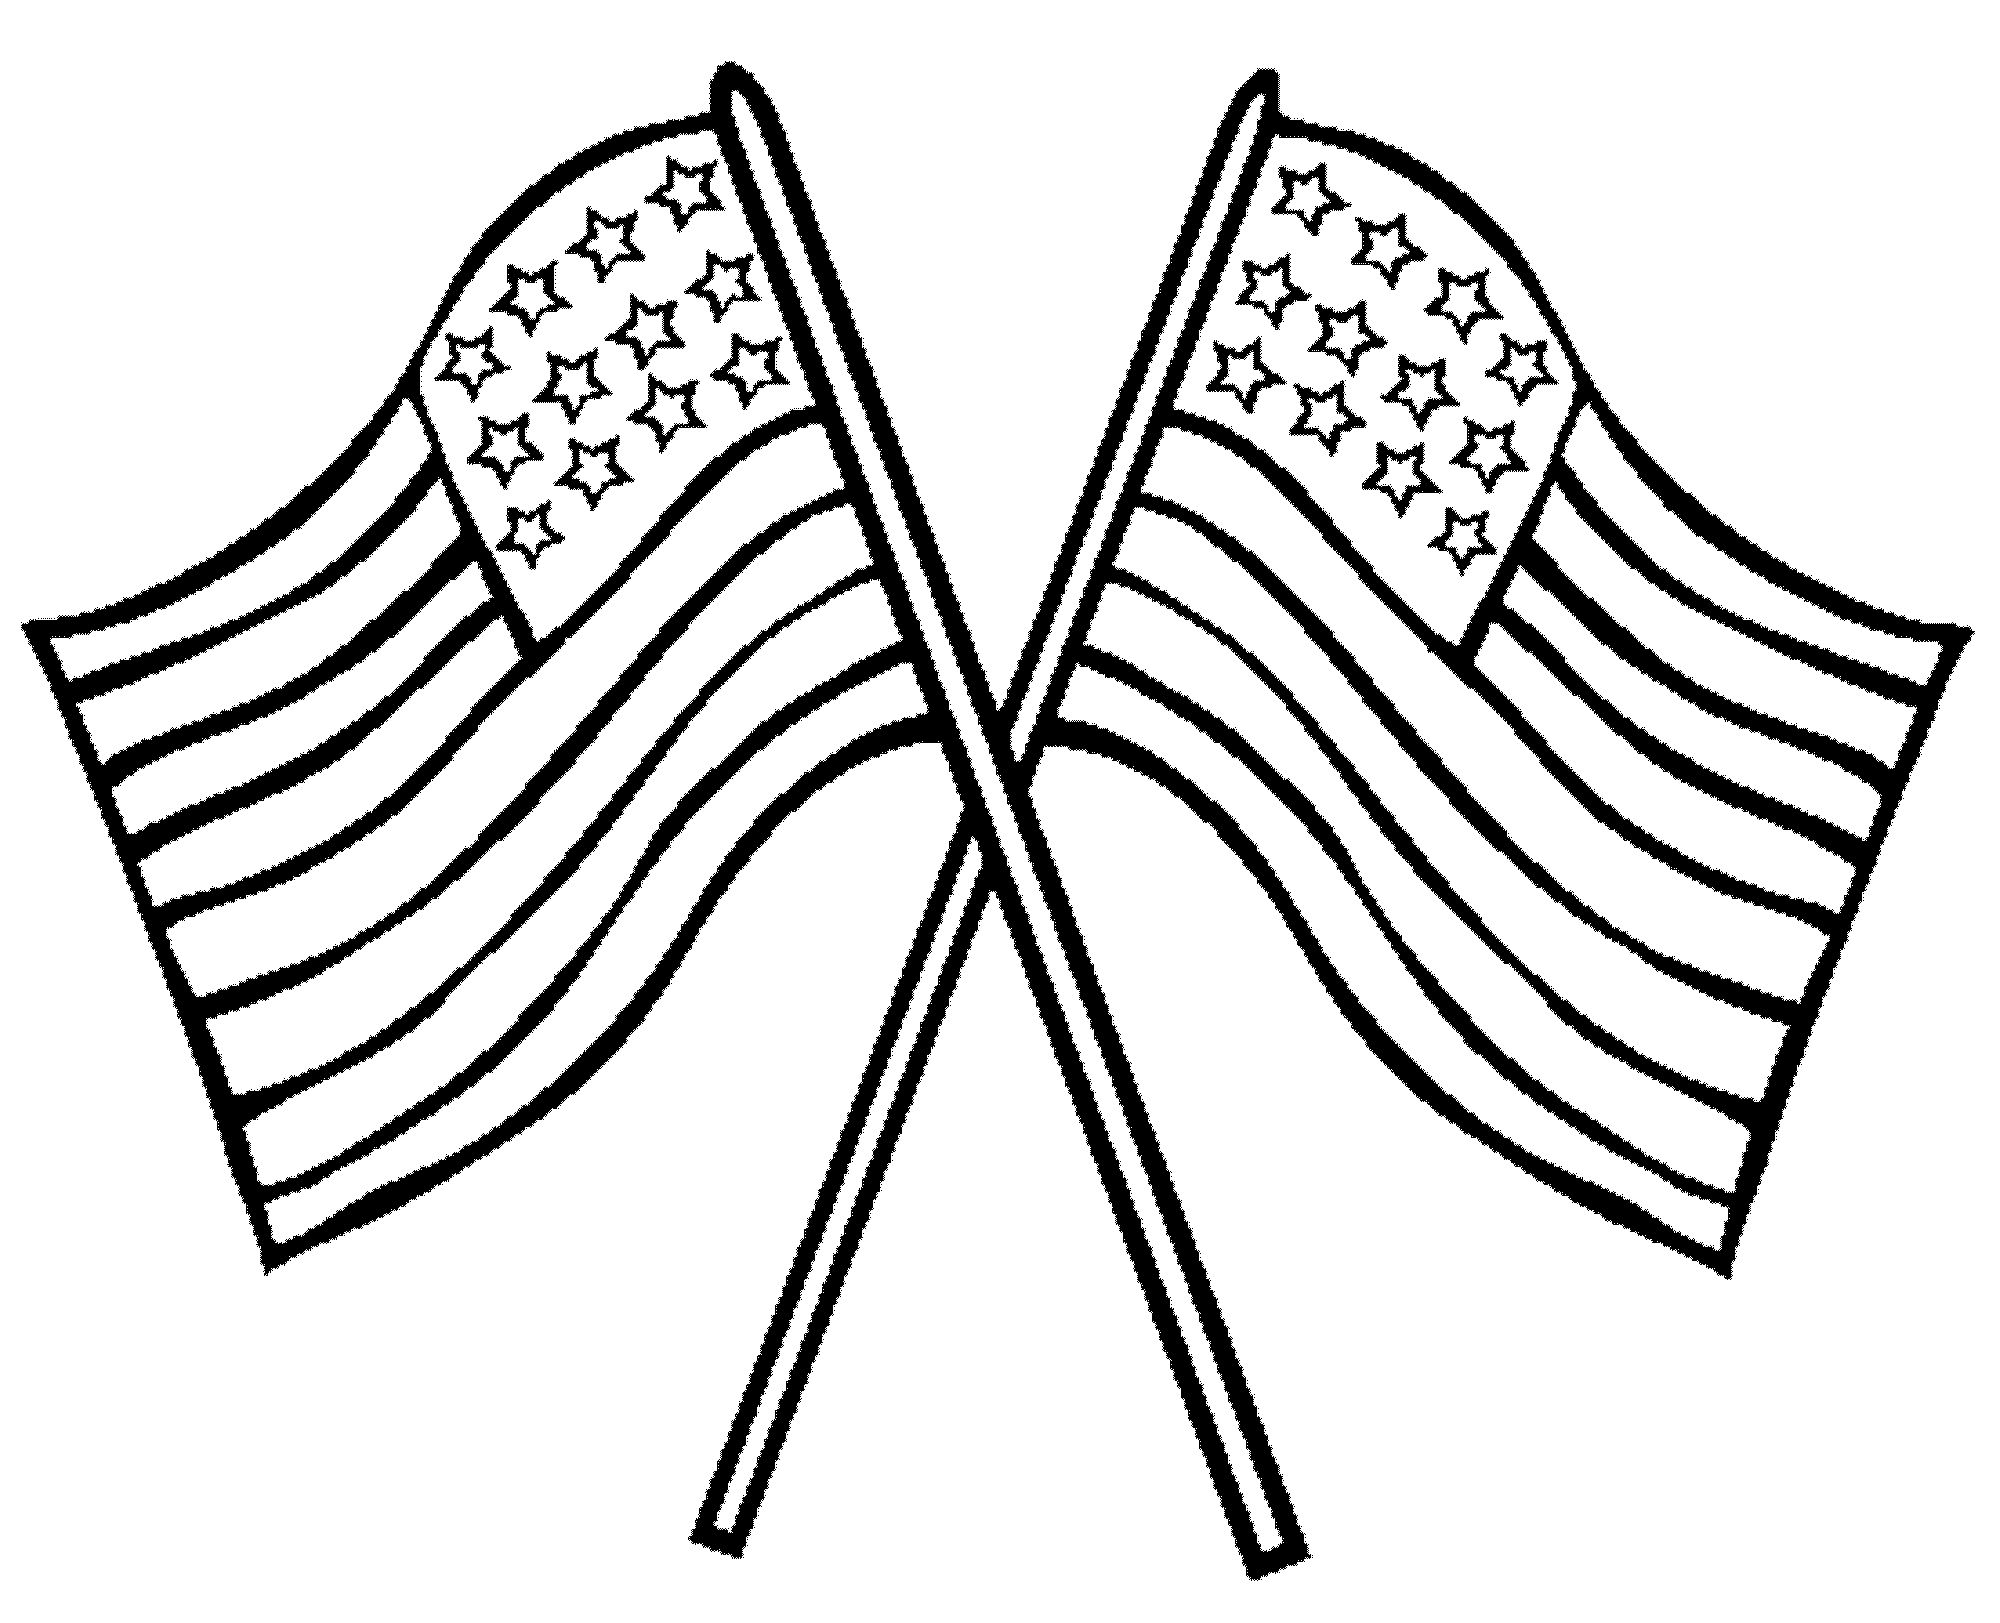 美国国旗画法简笔画图片